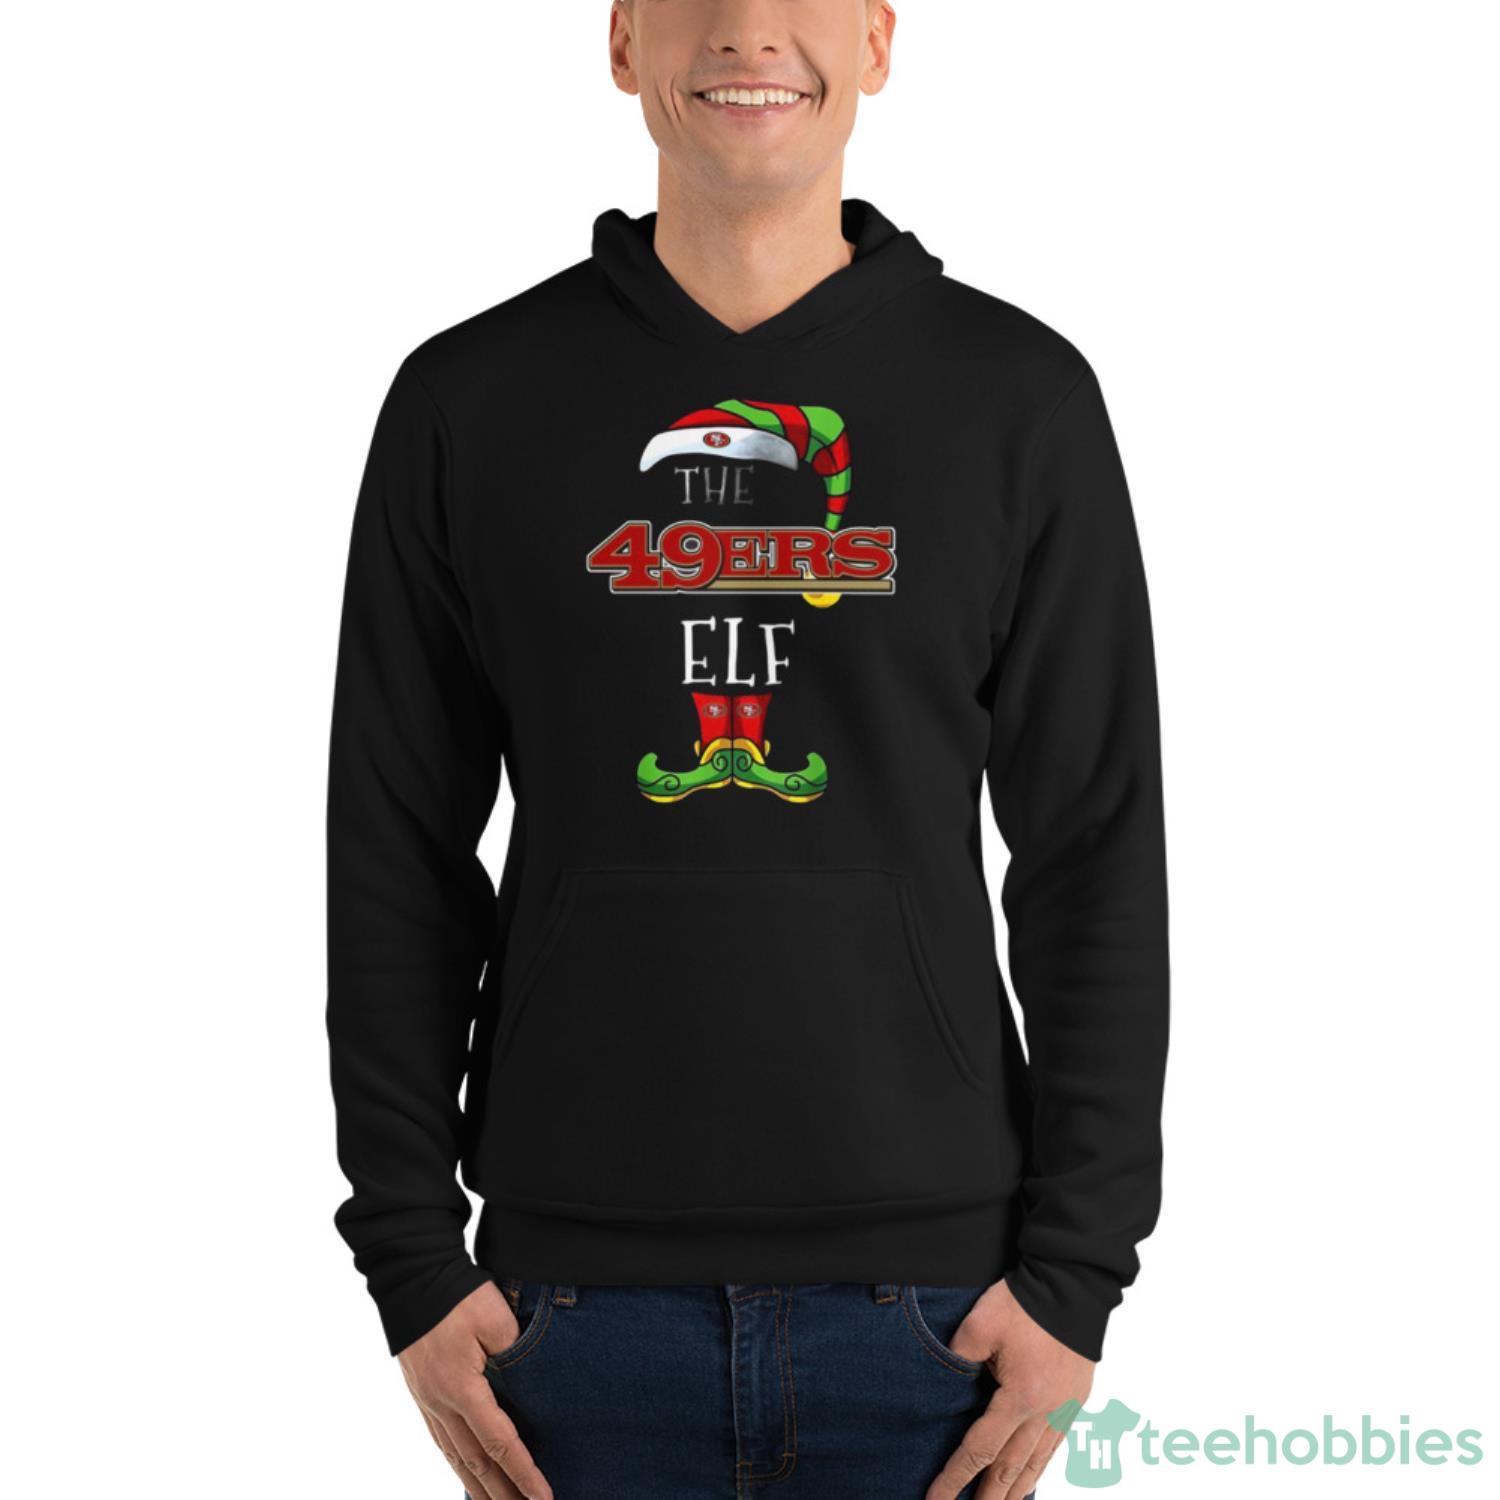 San Francisco Giants Christmas ELF Funny MLB T-Shirt